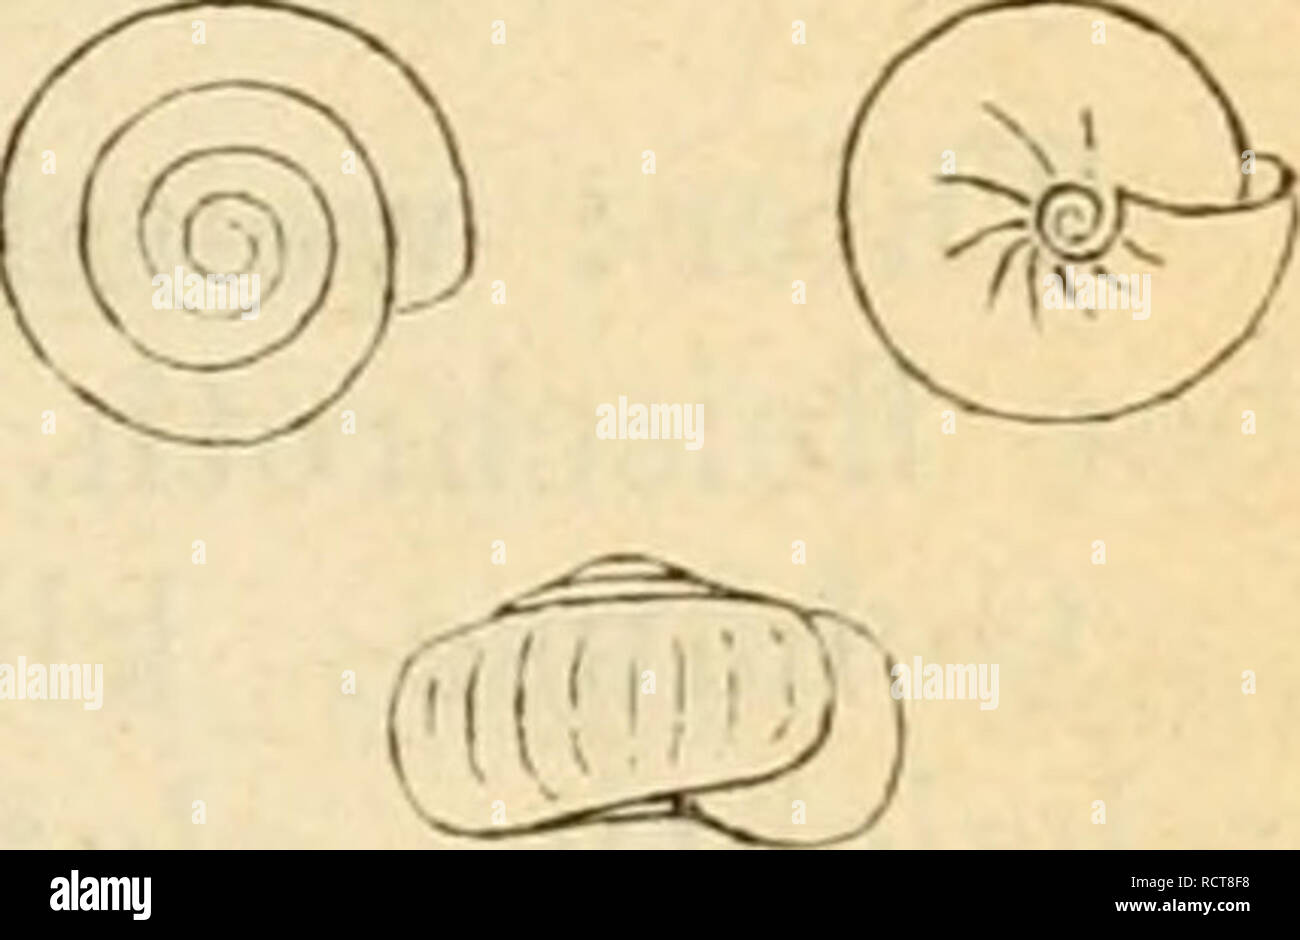 . Deutsche excursions-mollusken-fauna. Mollusks. 79 wo häufig auch die Jahresabyäize durch schwache, weiss- liche Wültste bezeichnet sind. 10 Hg all na contra et a, Wesfcrh&lt;nd. Zonites crif.staUhta, car. contracta, Westerlund, Fauna Moll. p. Sr». Hytilina contracta, Clessin, Jahrb. mal. Gesellsch. 1875. p. 32. t. 2. fig. 1. (Anatomie: Lehmann, Stettin, p. 67. t. 10. üg. 21 ? H. crystallina). Thier: klein, milchweiss, Kopf und Augeniräger bchwärz- lich angeflogen; Augenträger lang cylindri.sch, nach oben langeitormig verdickt; Fühler sehr kurz. (Lehmann). Gehäuse: klein, durchbohrt, nie- der Stock Photo